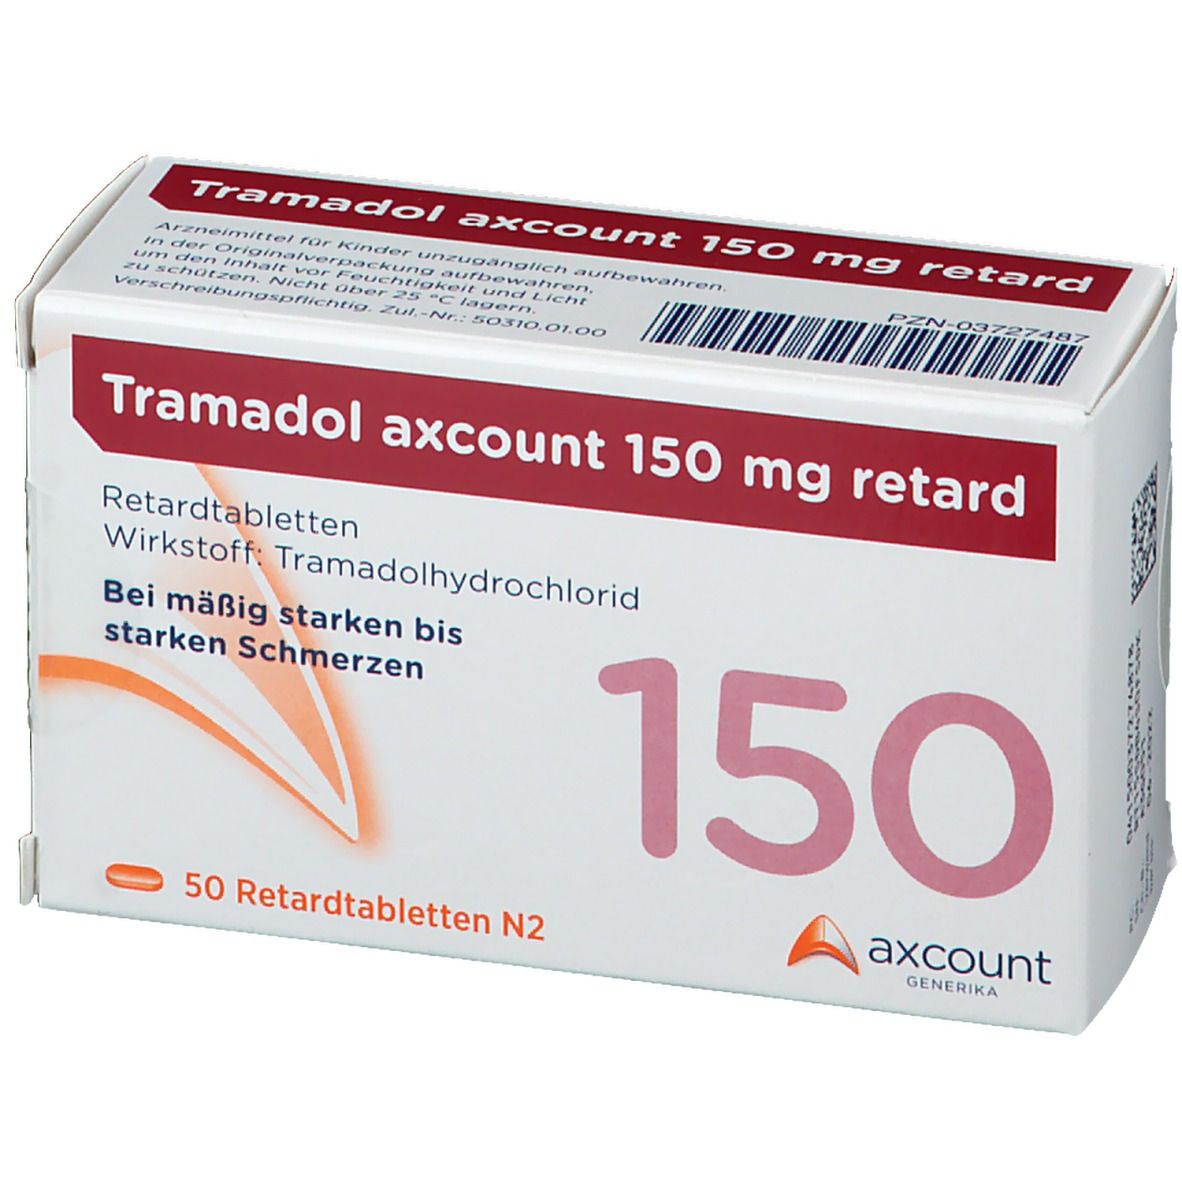 Tramadol axcount 150 mg retard